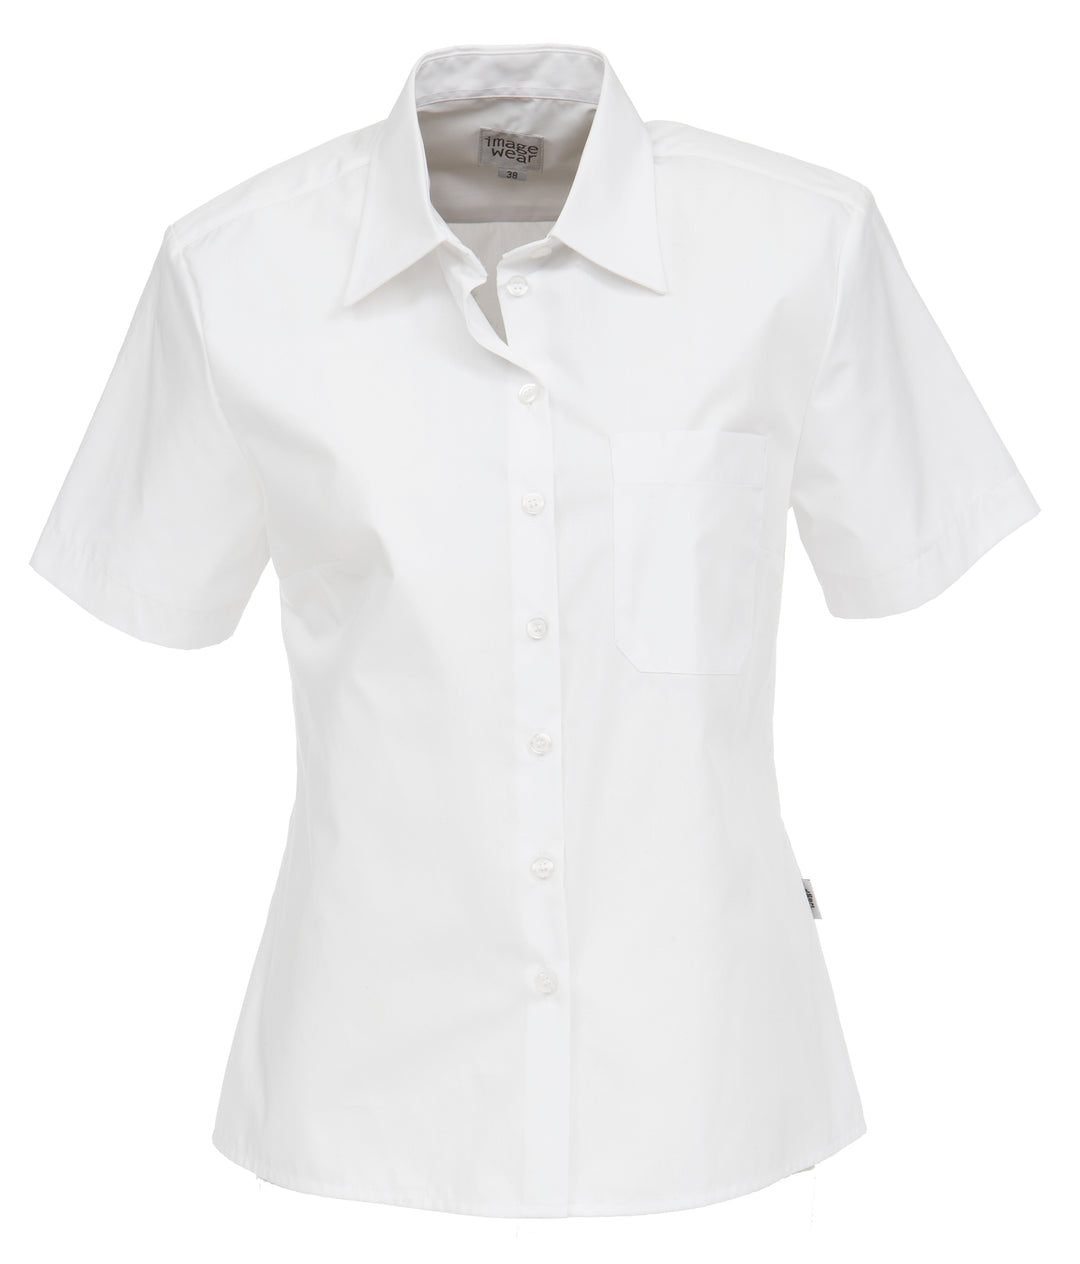 Naisten valkoinen lyhythihainen paitapusero. Rintatasku, jossa myös kynätasku erikseen. Helppohoitoinen ja miellyttävän tuntuinen materiaali. 